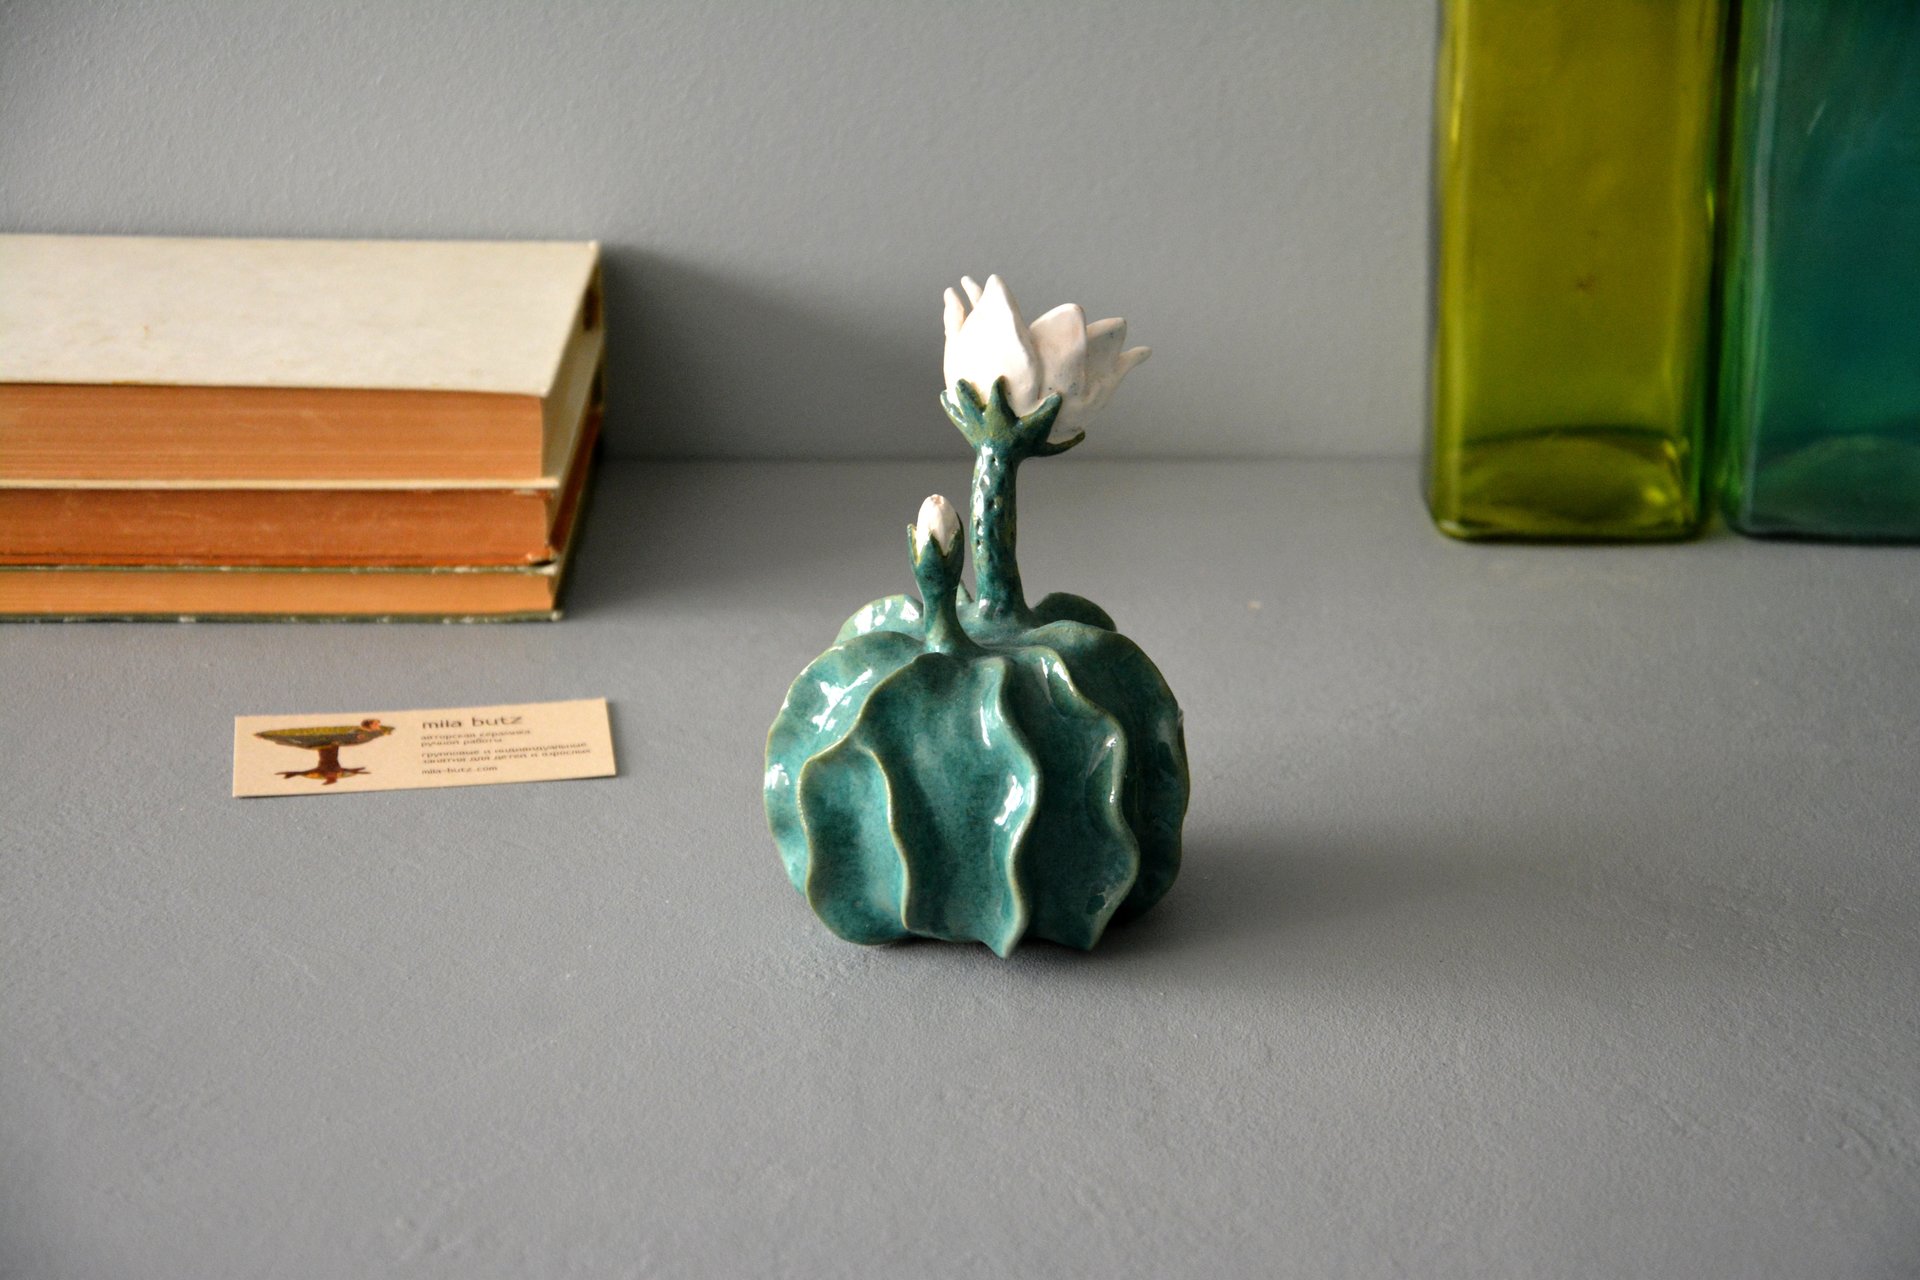 Ceramic Notocactus ottonis - Cactus ceramic, height - 12 cm, photo 4 of 6.